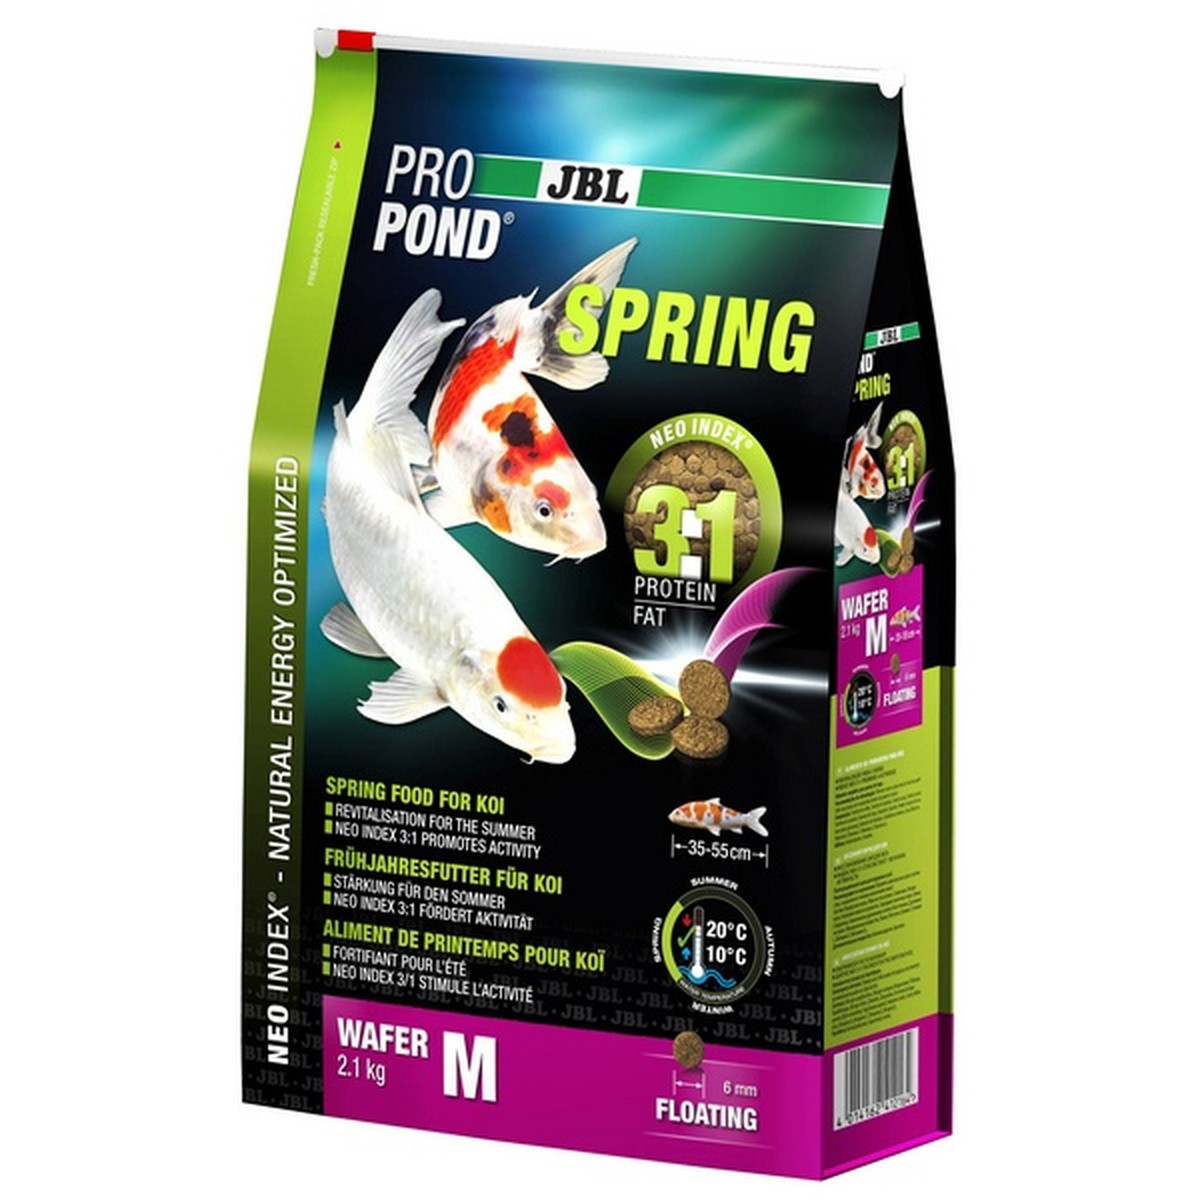   JBL ProPond Spring M, 2,1 kg  2.1kg